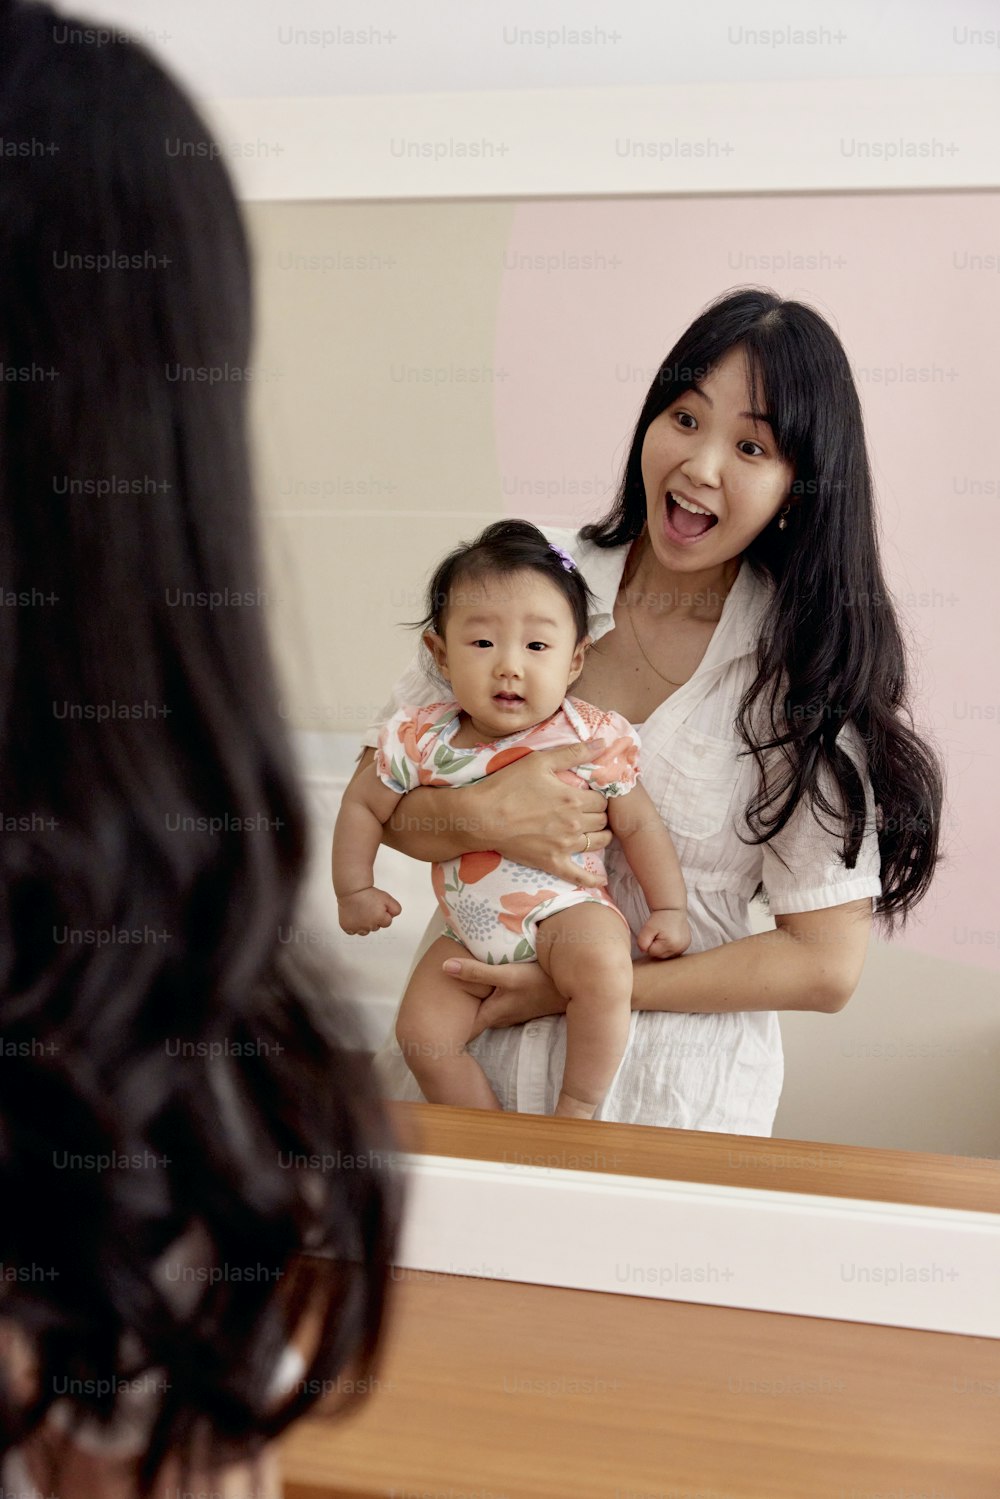 鏡の前で赤ん坊を抱く女性